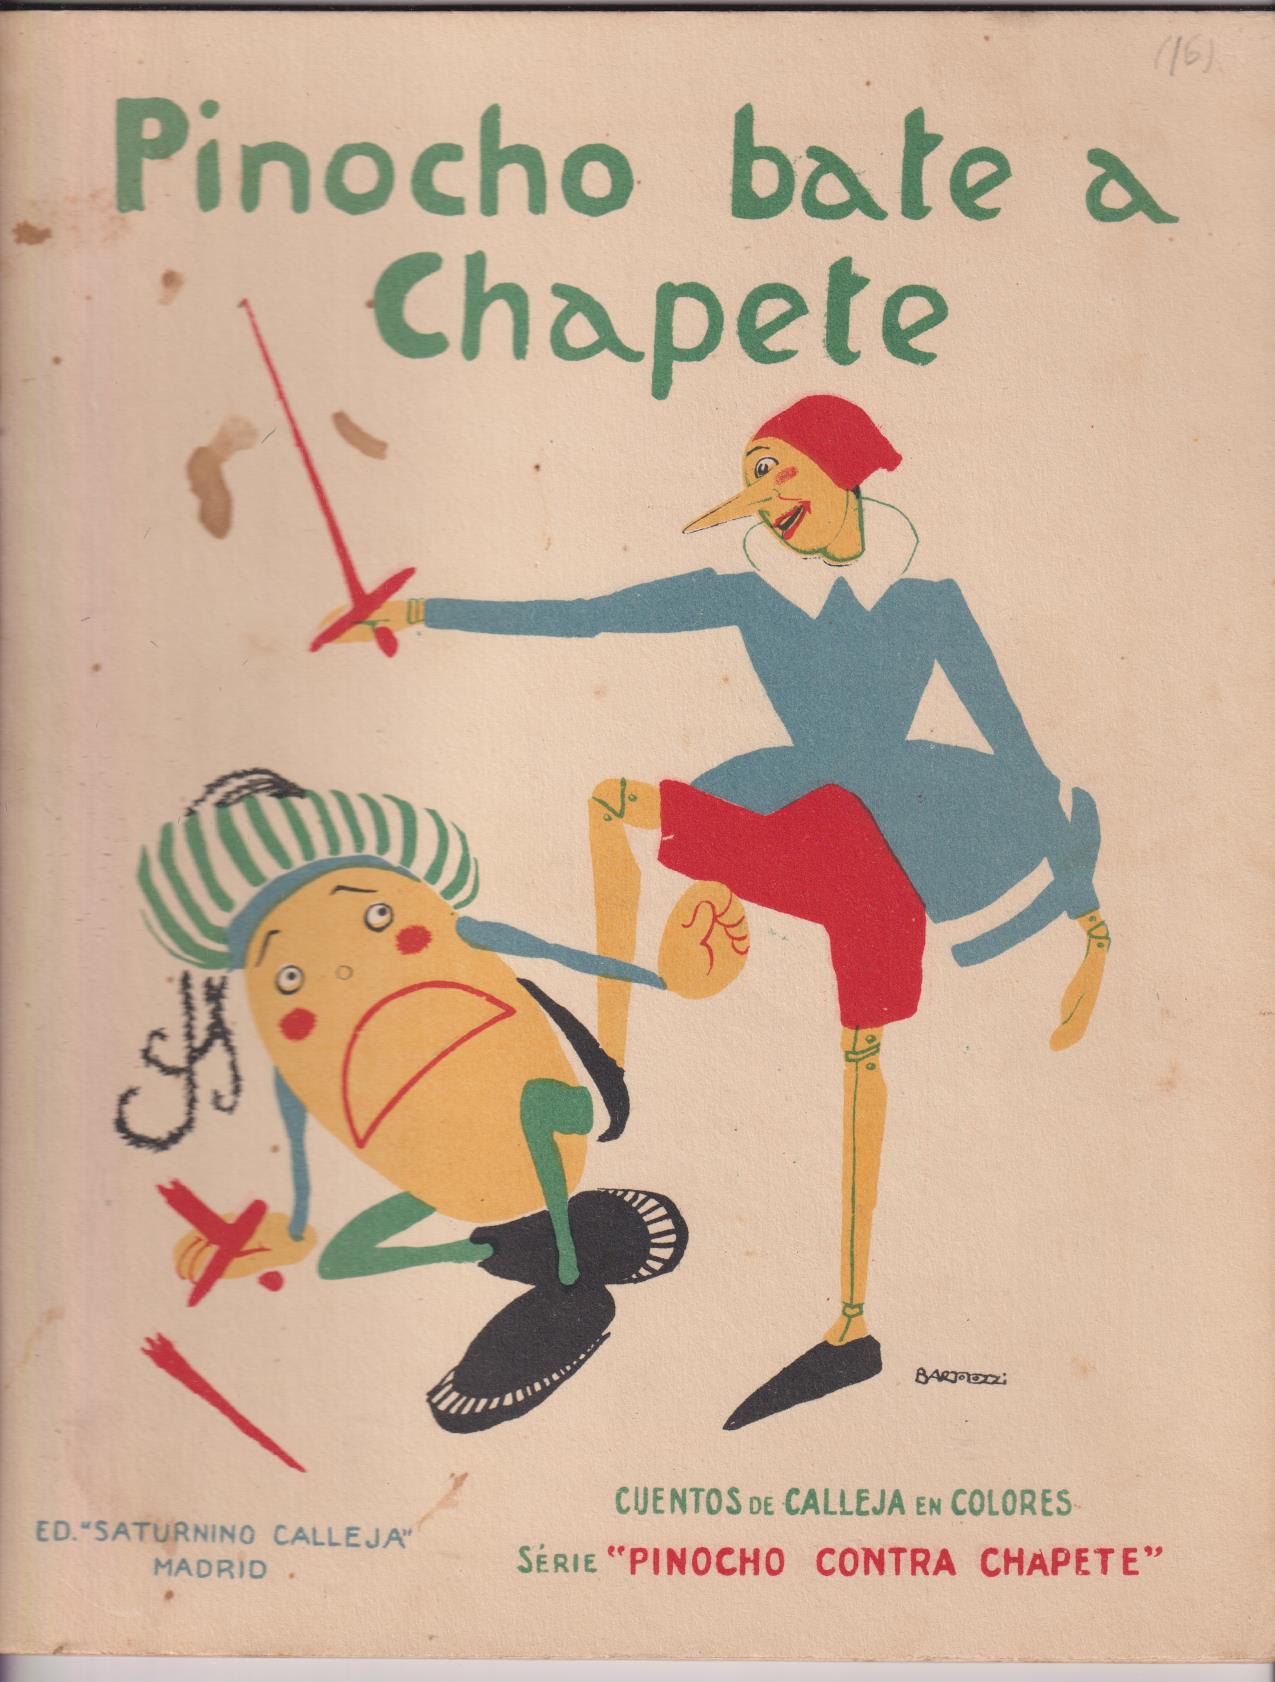 Pinocho contra Chapete nº 16. 1ª Edición Calleja 1923 (28x22) 16 páginas con ilustraciones color